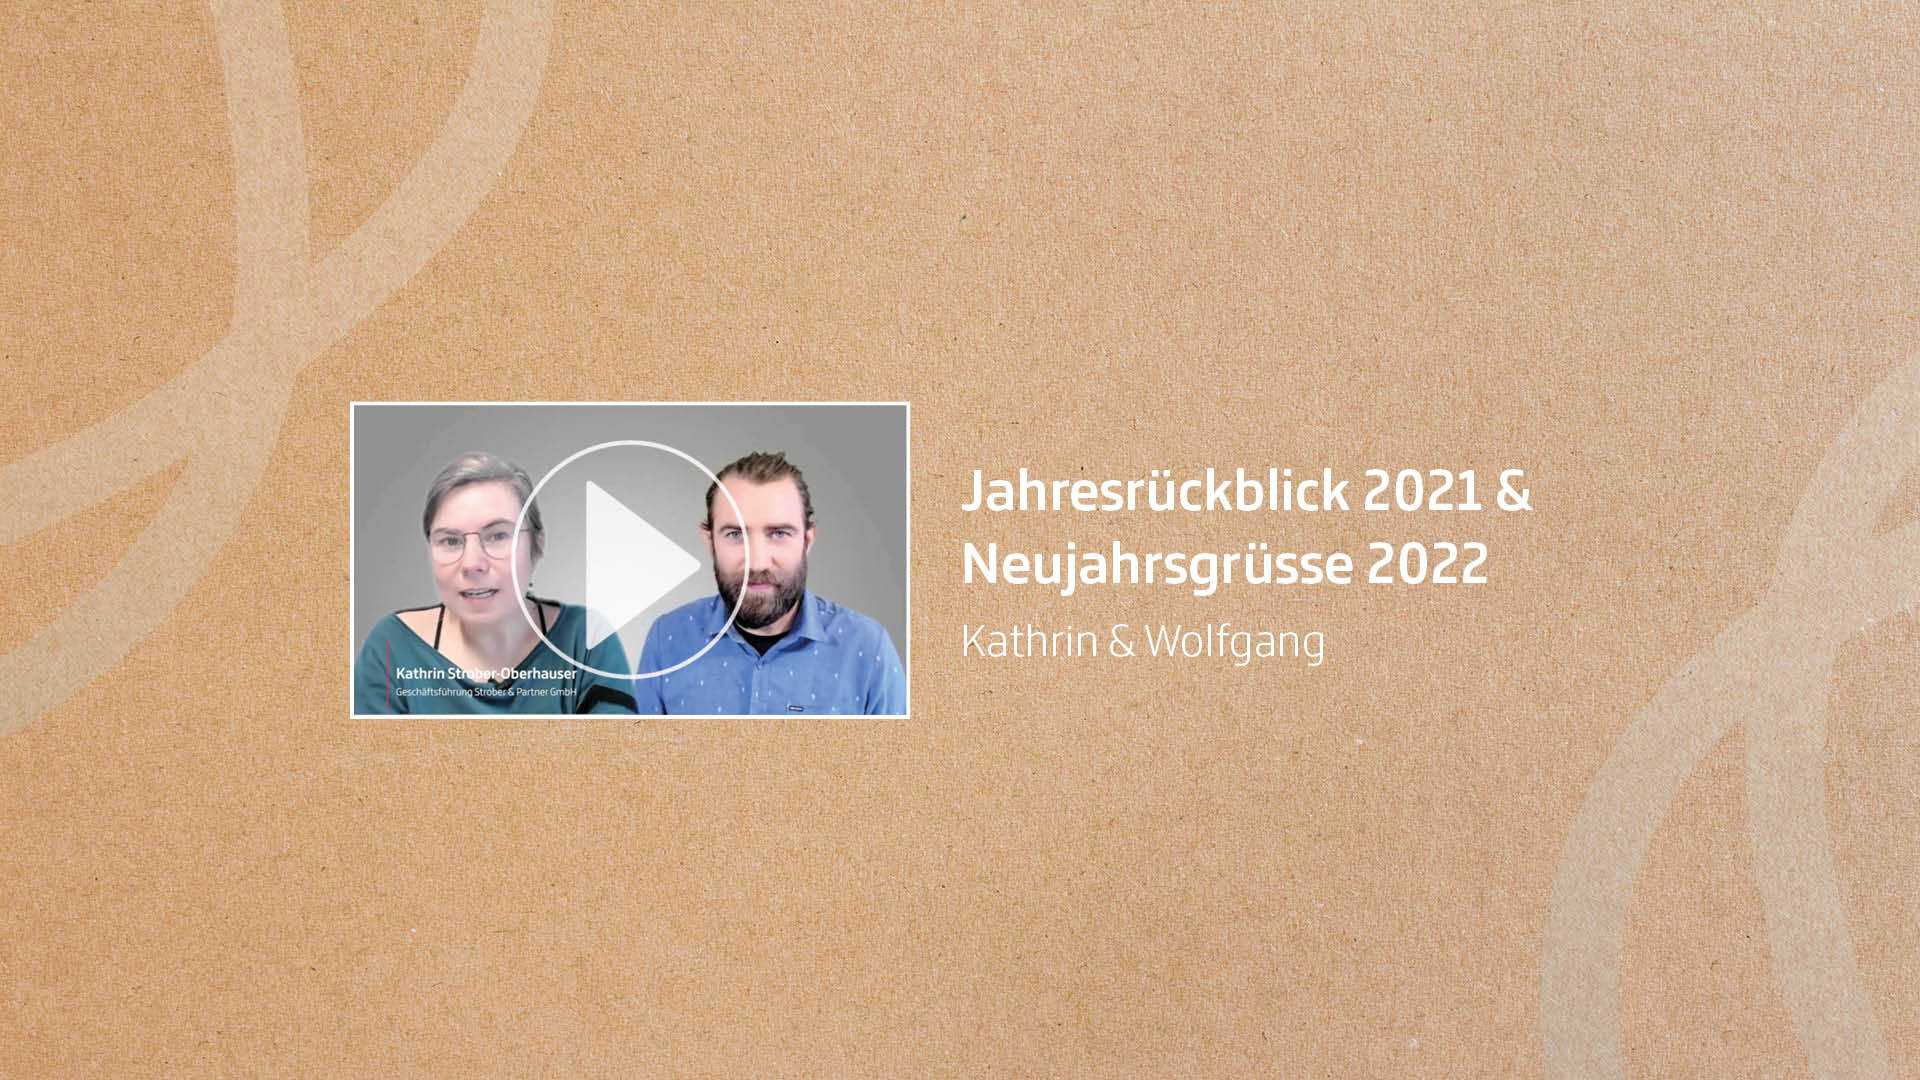 Jahresrückblick 2021 & Neujahrsgrüsse 2022